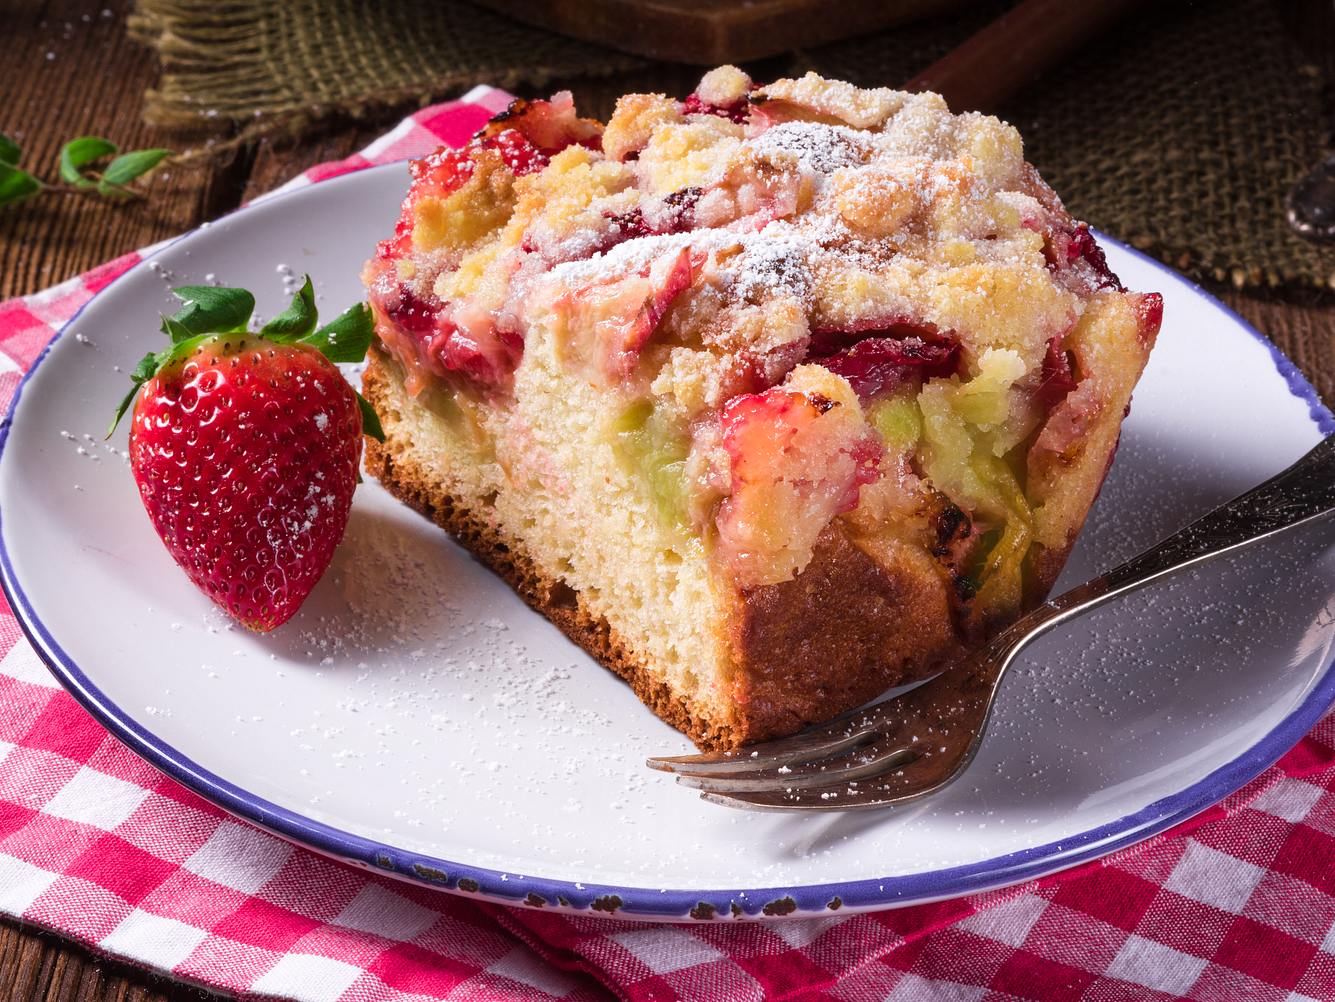 Ein echter Klassiker: Erdbeer-Rhabarber-Kuchen mit Streuseln vom Blech.